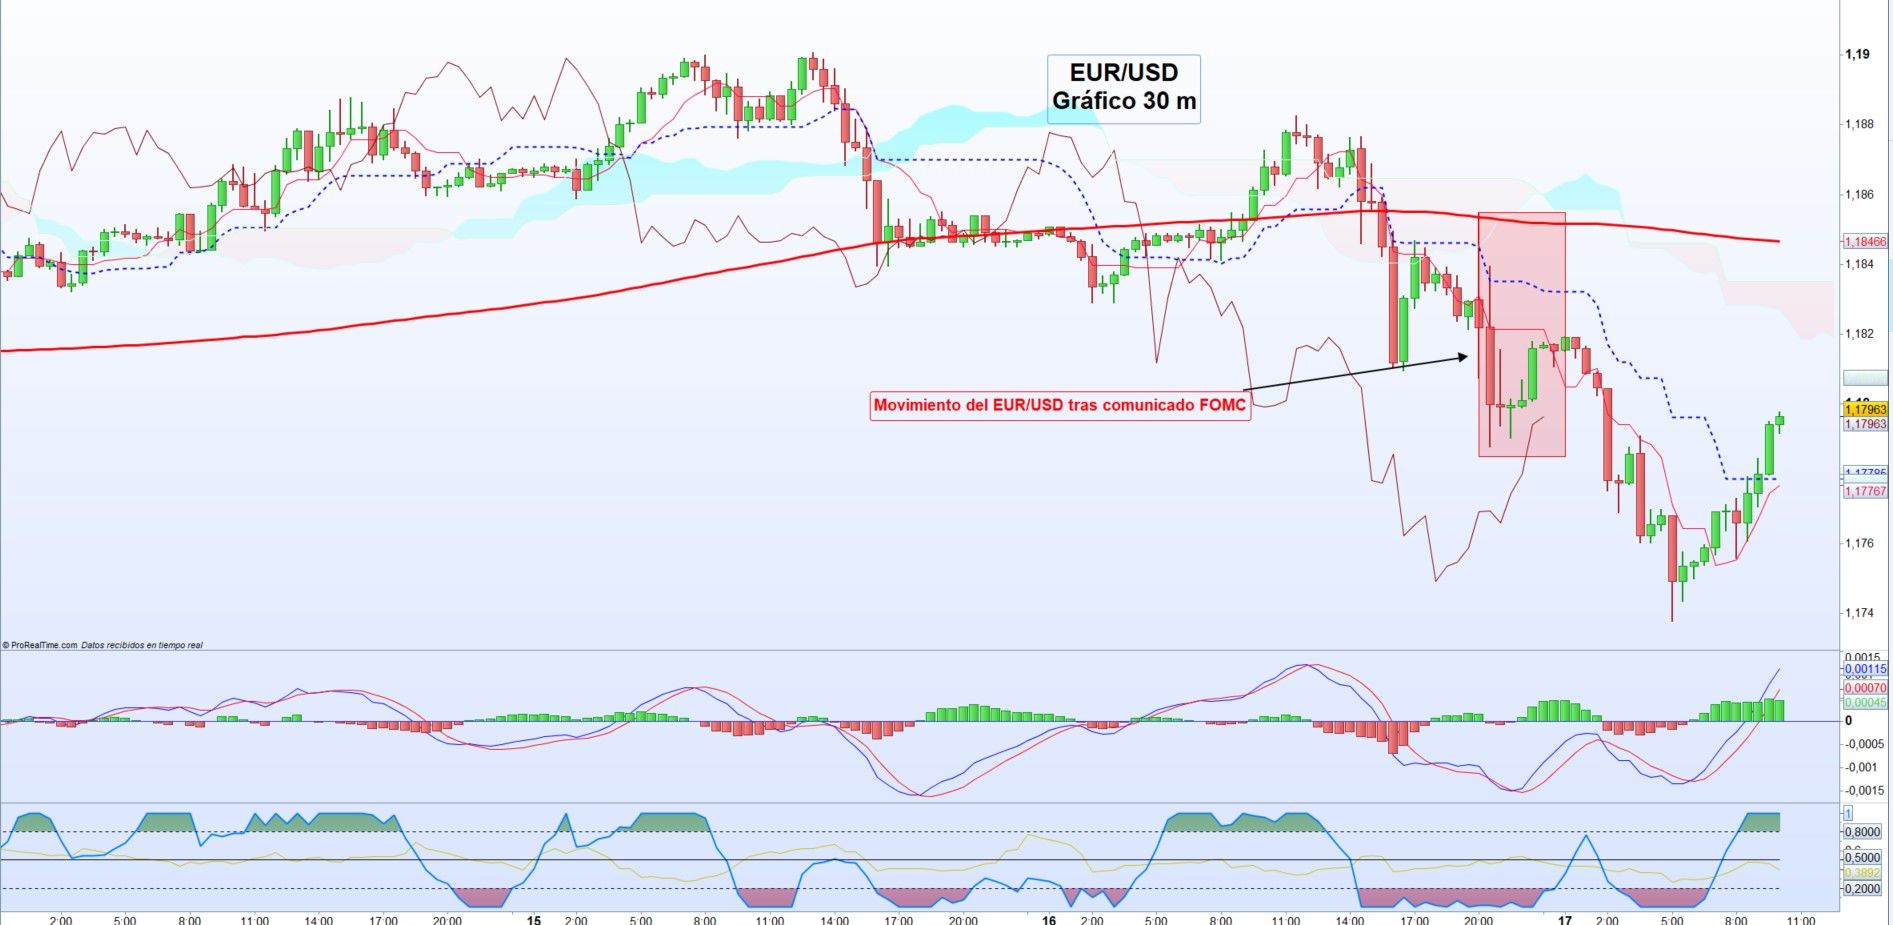 EUR/USD cae tras reunión FOMC